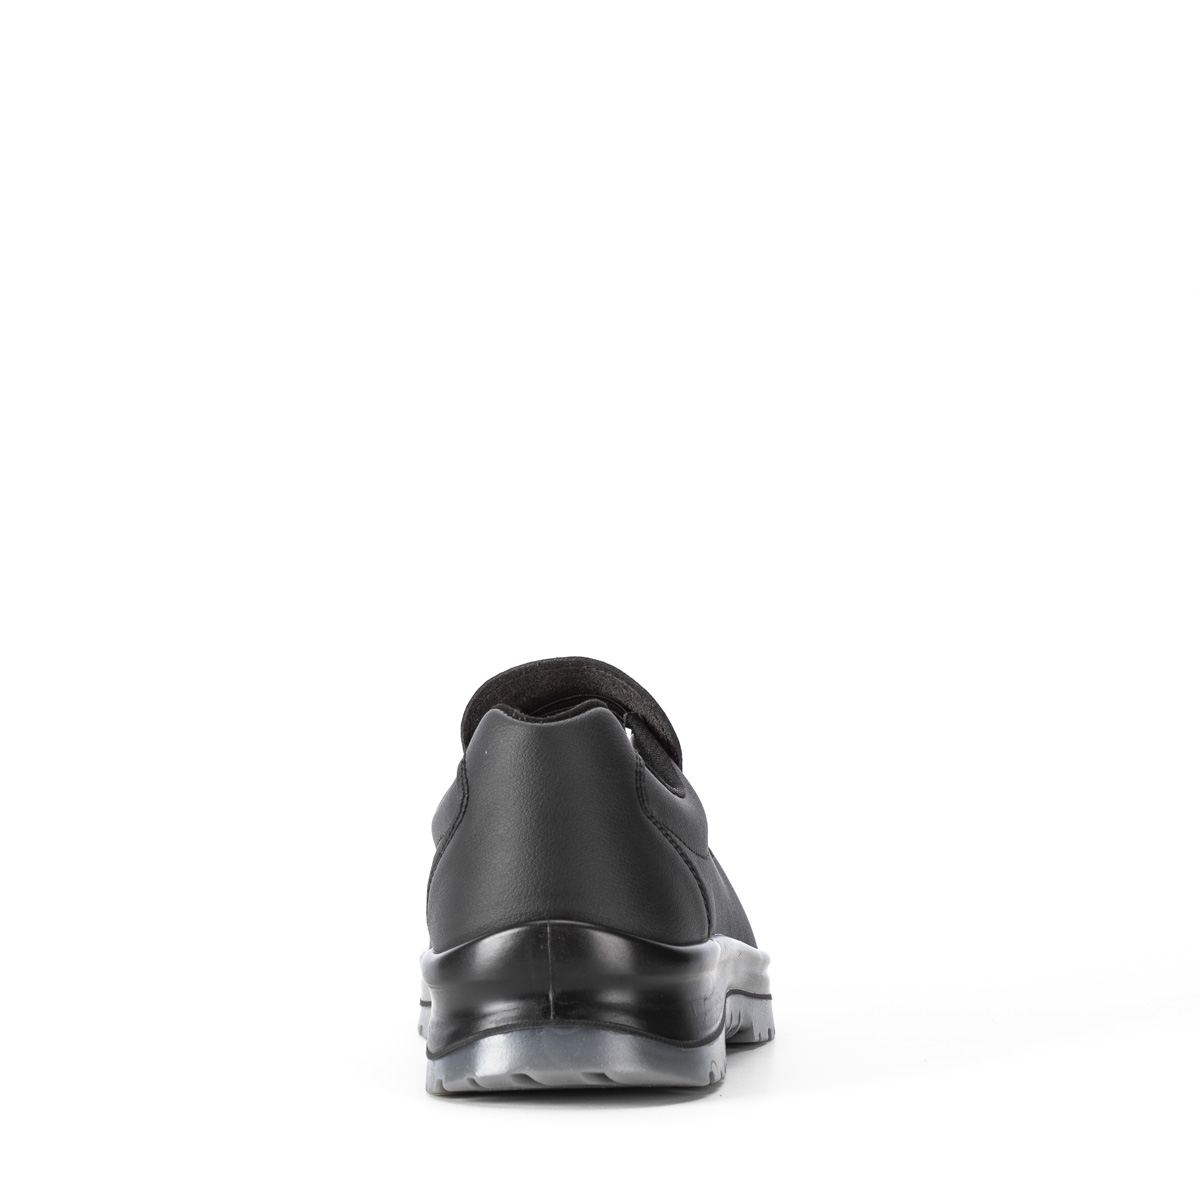 protezione Sixton Crystal Safety di classe con Shoes Chaussure - Peak SRC modello Codice VENEZIA - 86203-01 S2